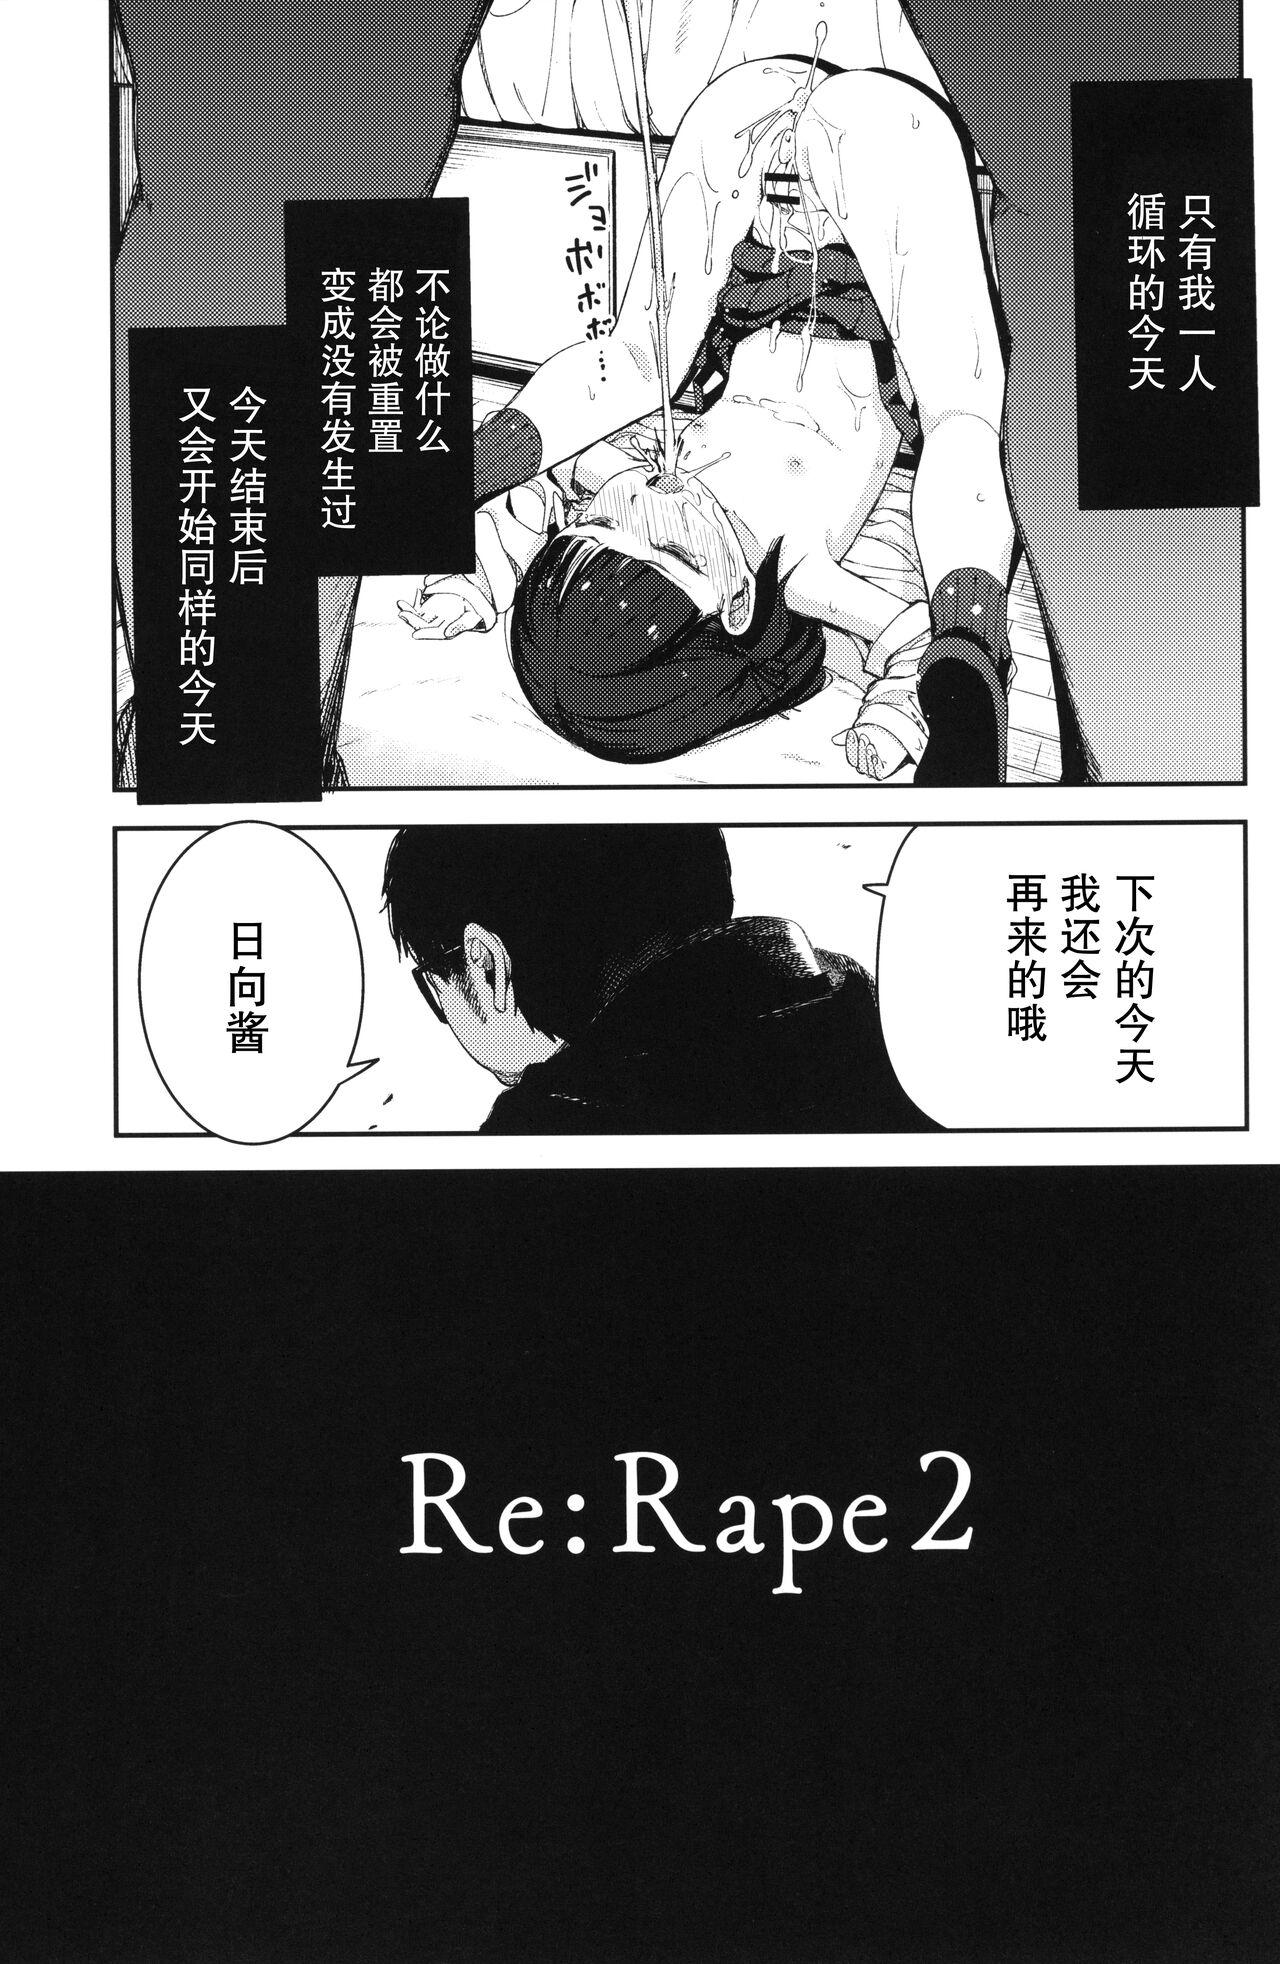 Rape 2 14